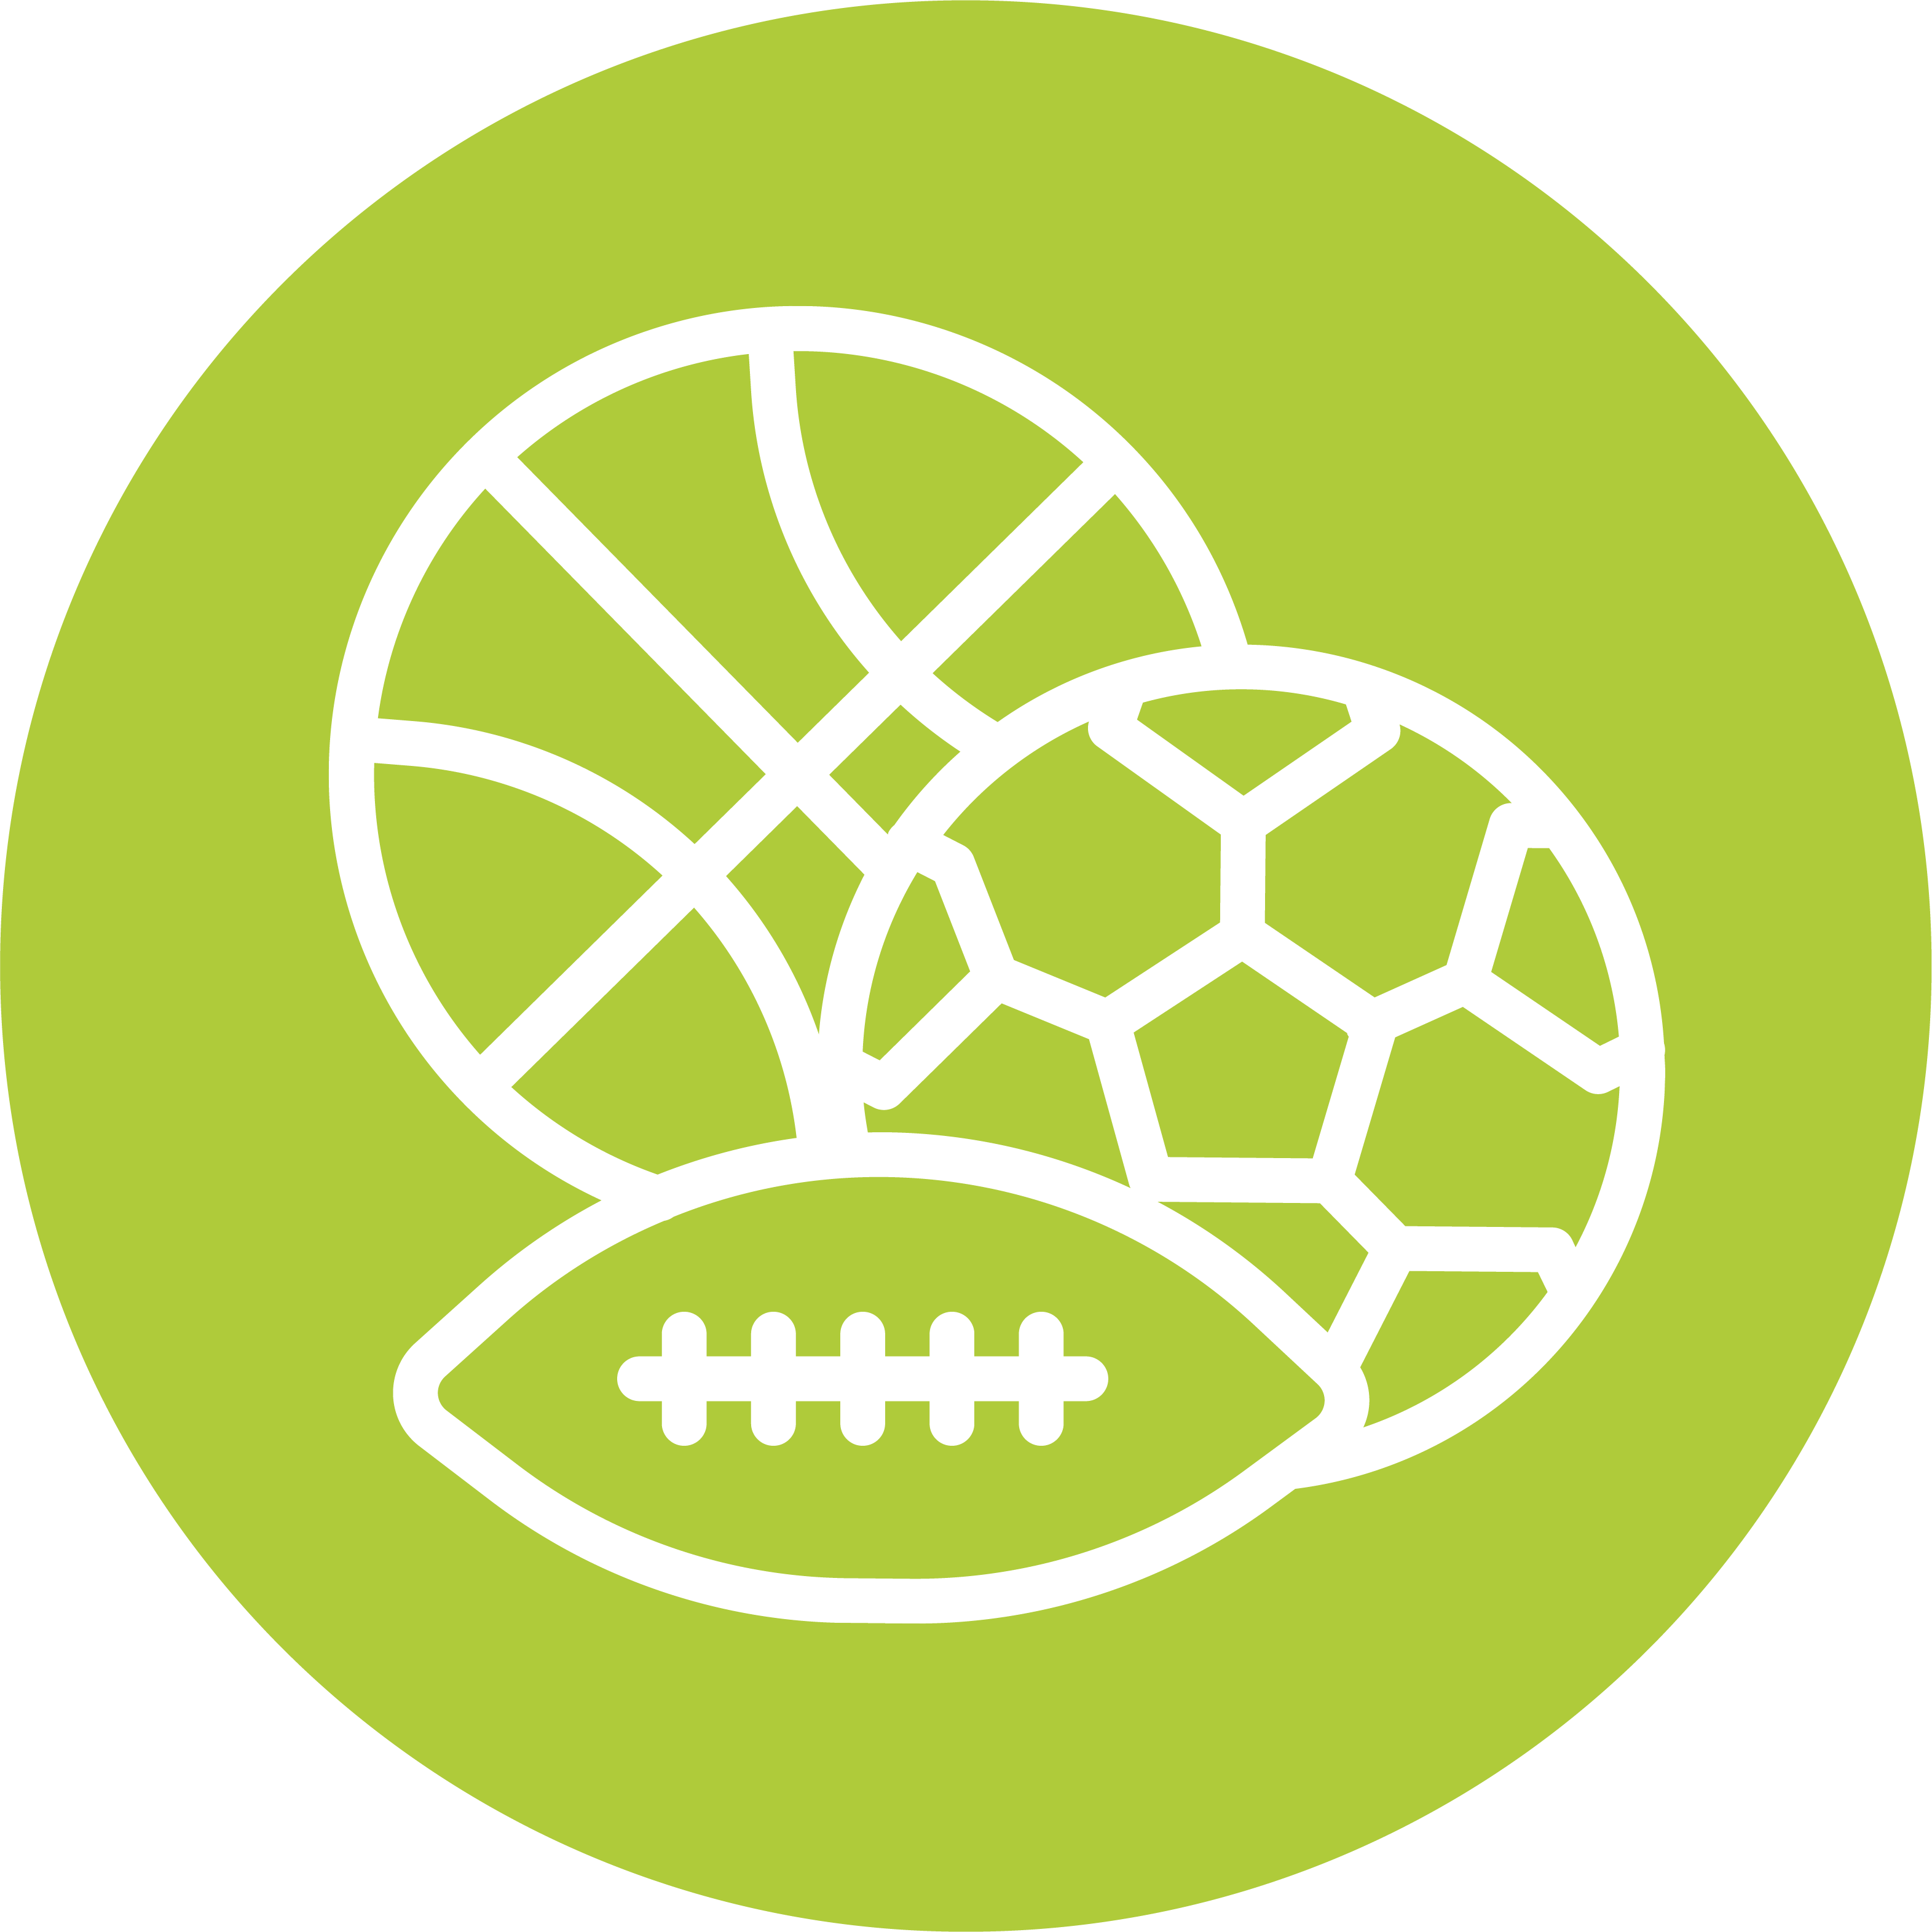 Icons eines weiß umrandeten Basketballs, Fußballs und American Footballs auf einem grünen kreisförmigen Hintergrund, symbolisch für die Vielfalt an Sport und sportlichen Aktivitäten.